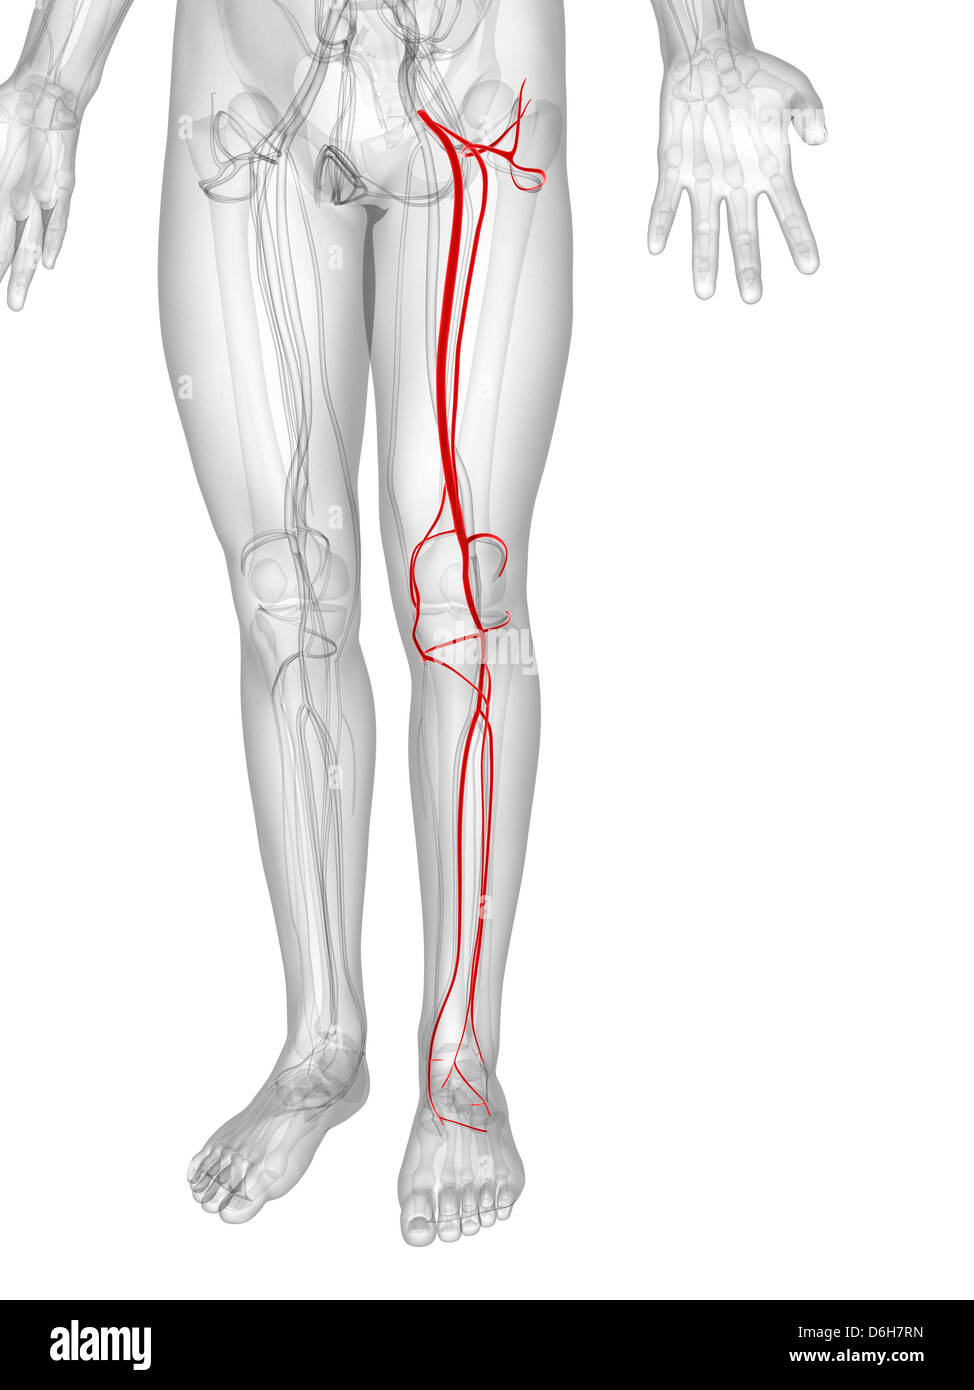 Артерия ноги операция. Шунтирование атеросклероза нижних конечностей. Шунт артерии нижних конечностей. Шунт бедренной артерии. Шунтирование артерия голени.